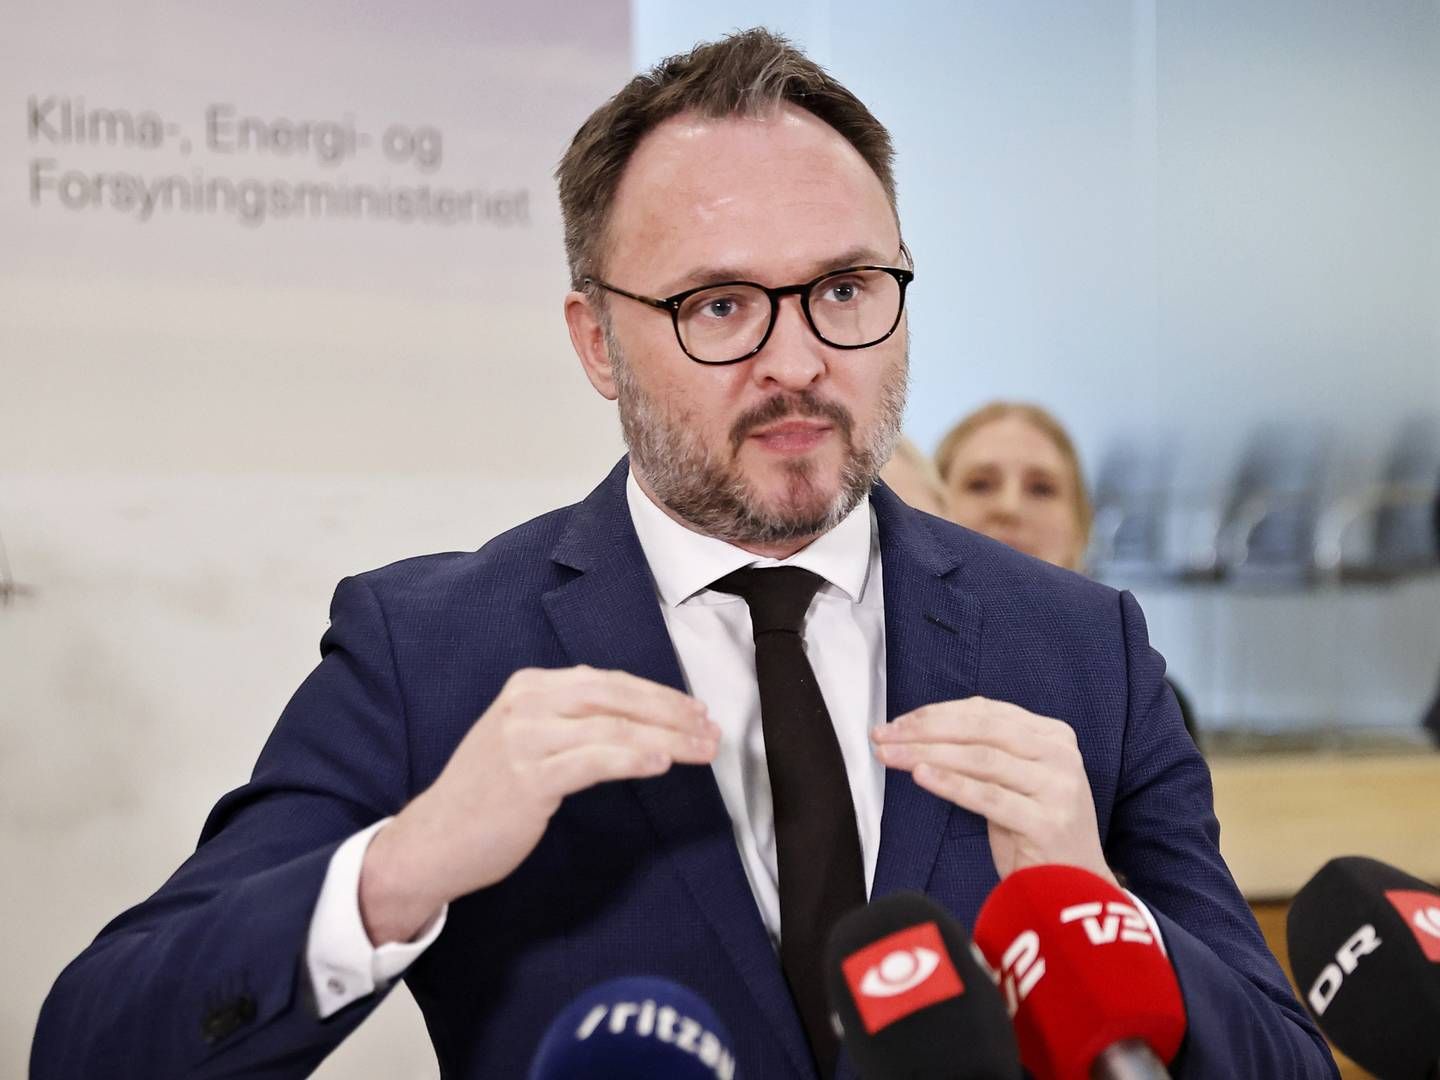 Klimaminister Dan Jørgensen glædede sig over den brede politiske opbakning til Danmarks første Power-to-X-strategi. | Foto: Jens Dresling/Ritzau Scanpix